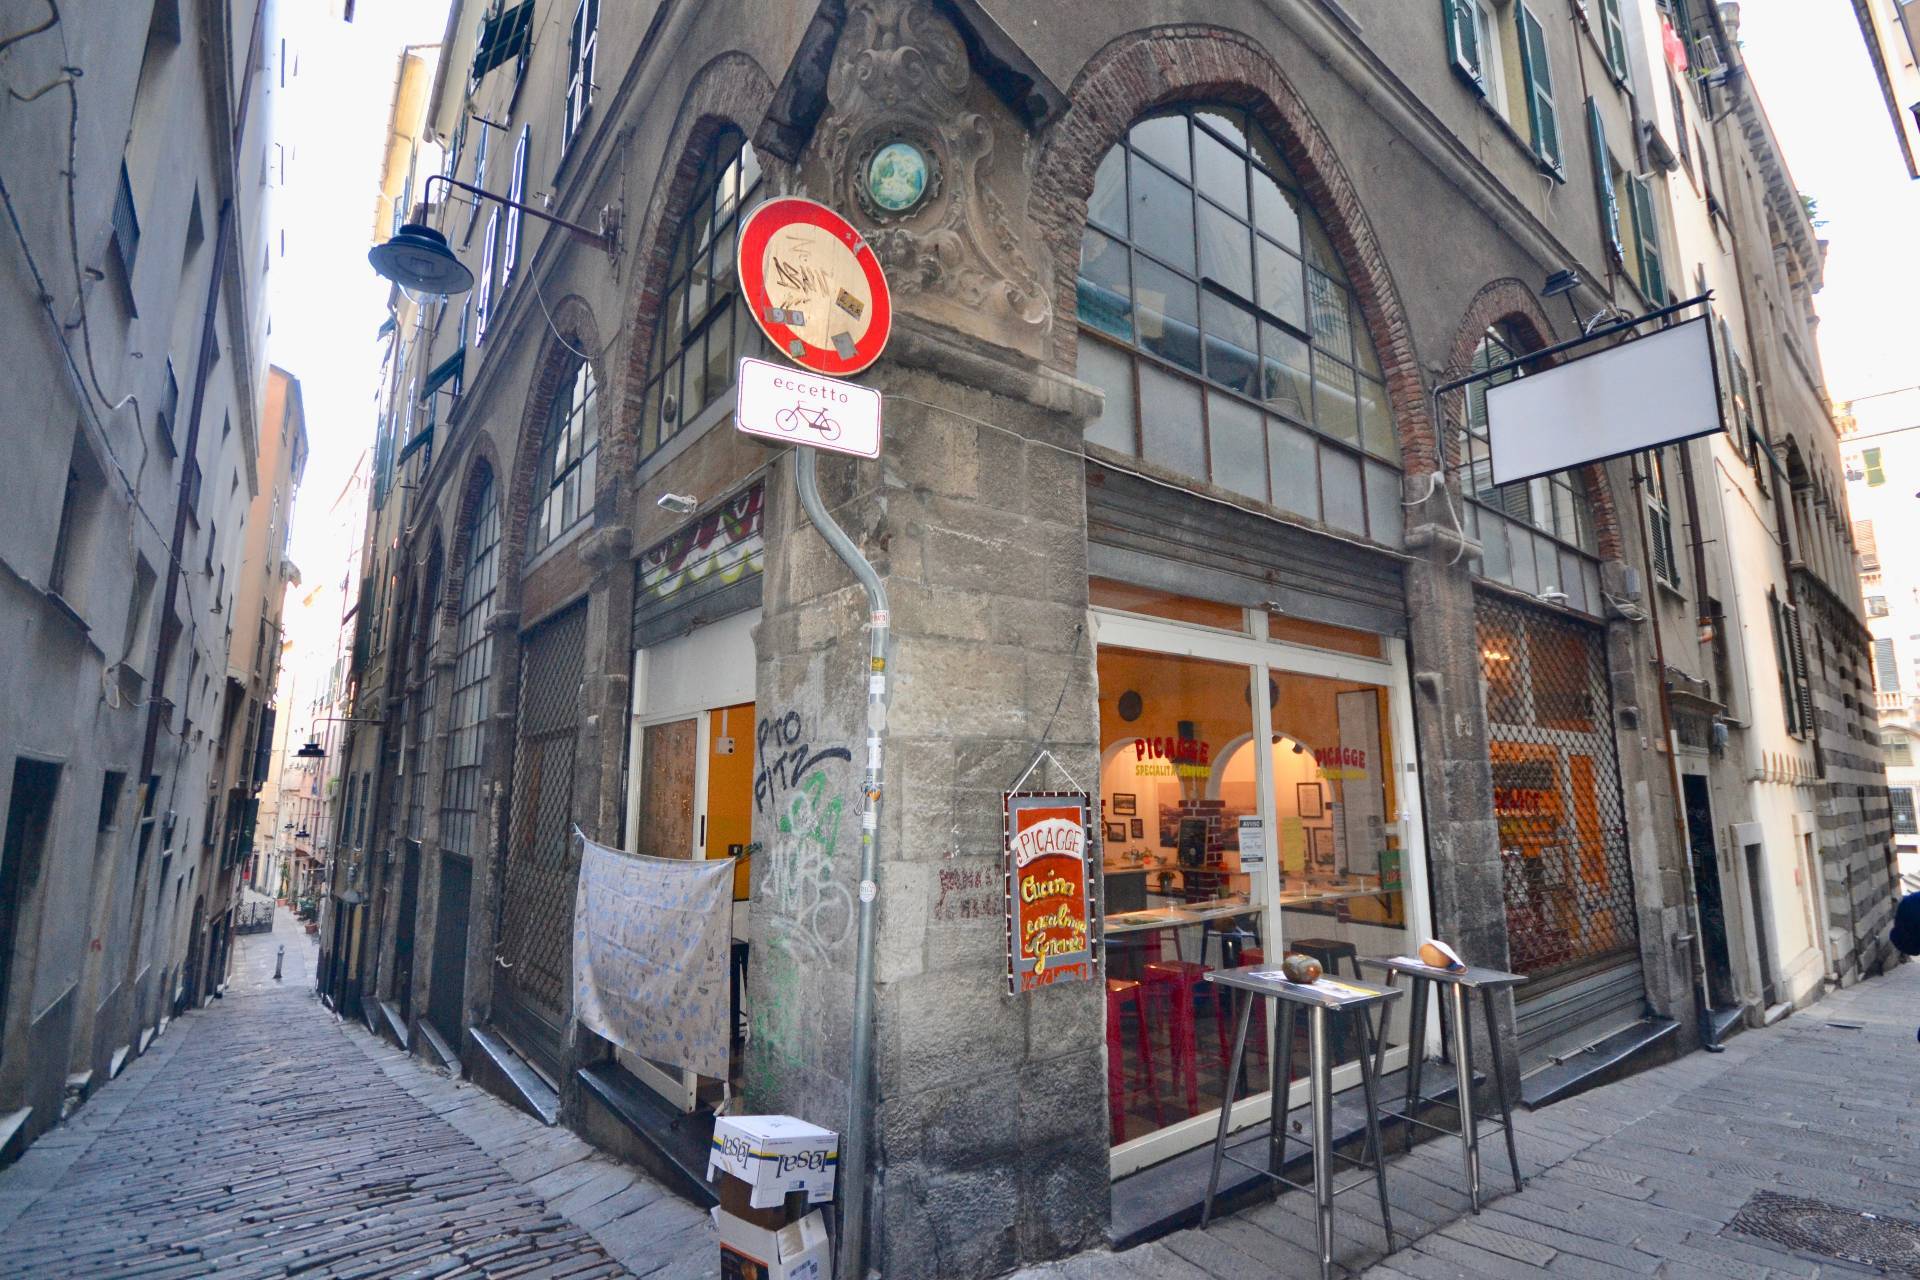 Attivit commerciale in vendita, Genova centro storico